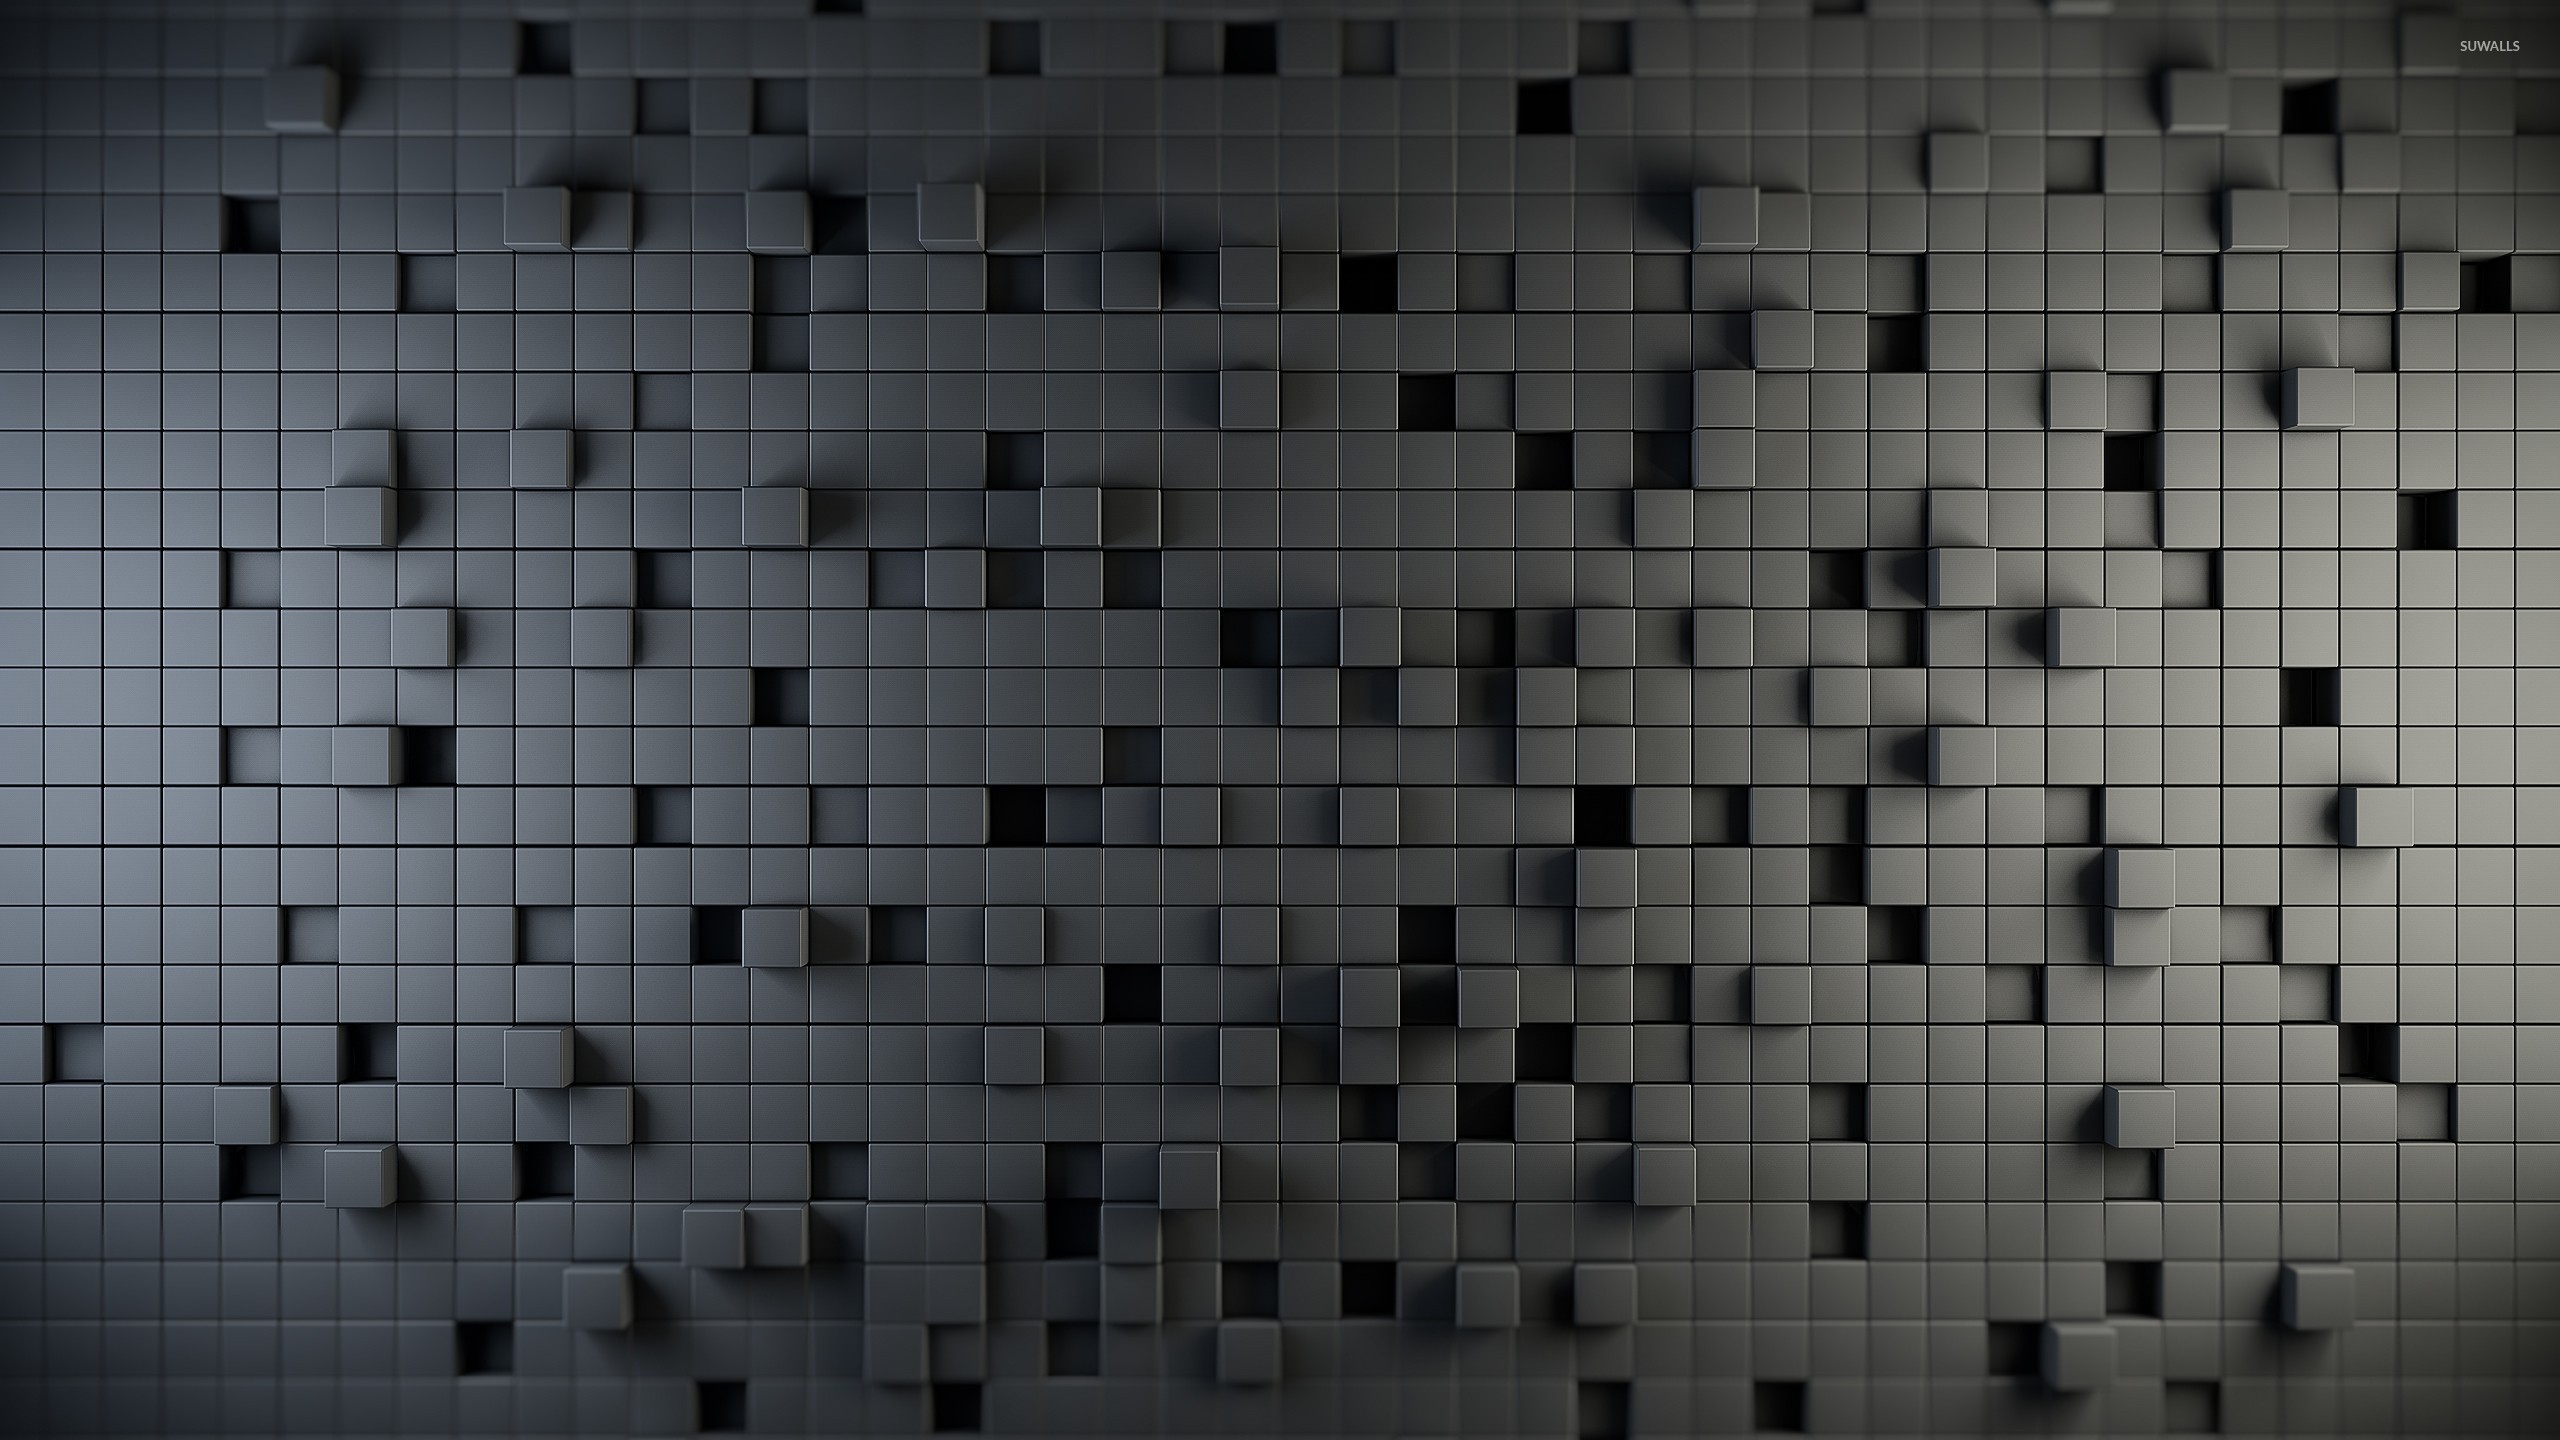 Cube wall Wallpaper 2560x1440.